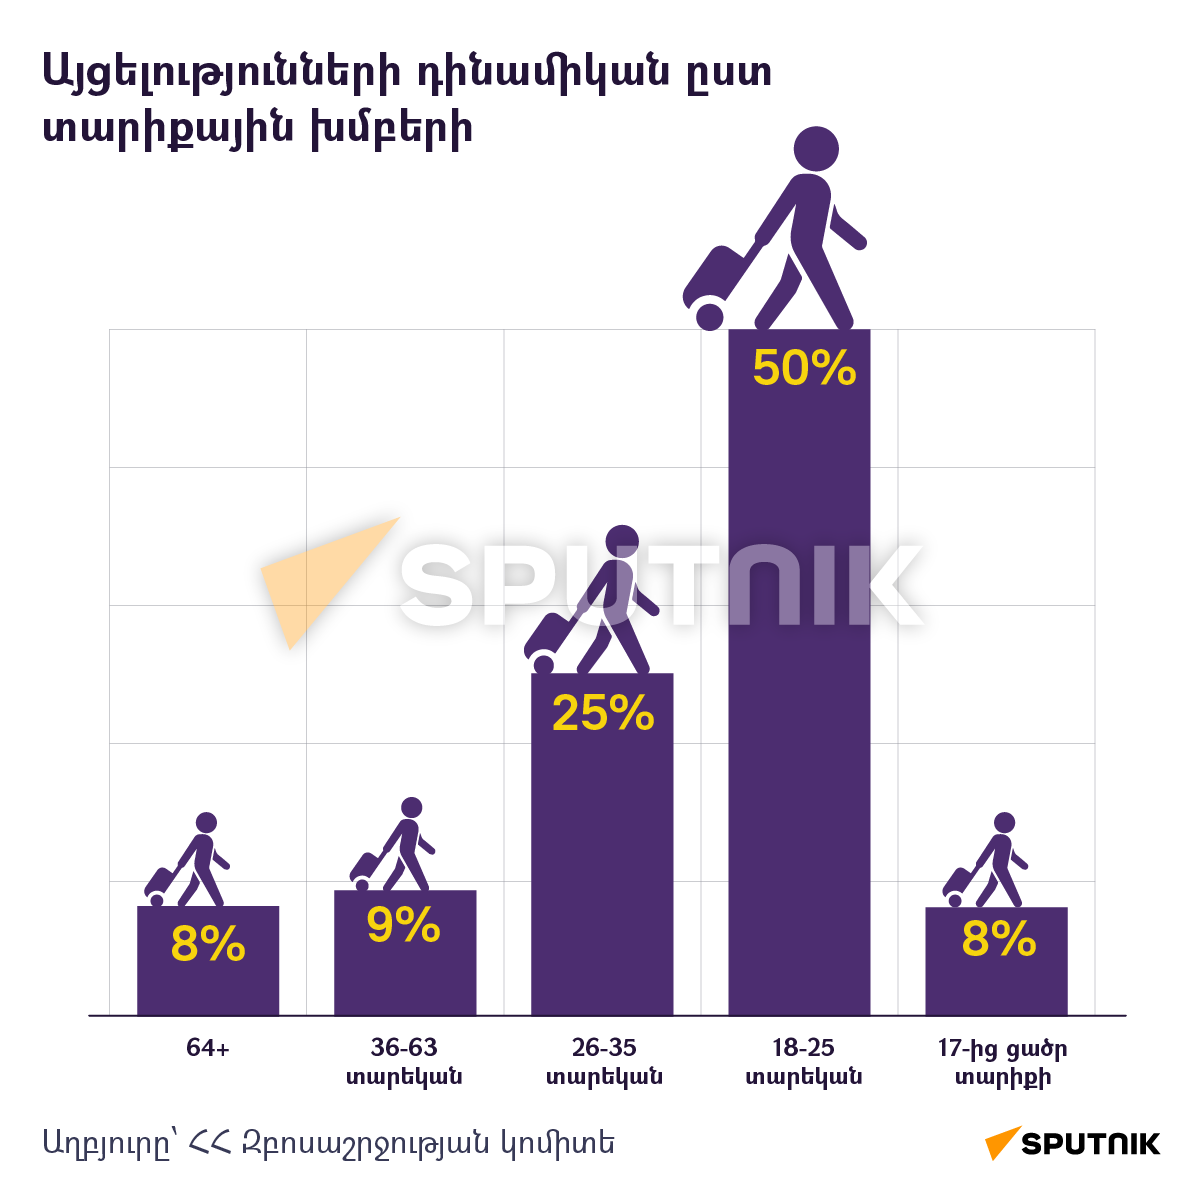 Այցելությունների դինամիկան ըստ տարիքային խմբերի - Sputnik Արմենիա